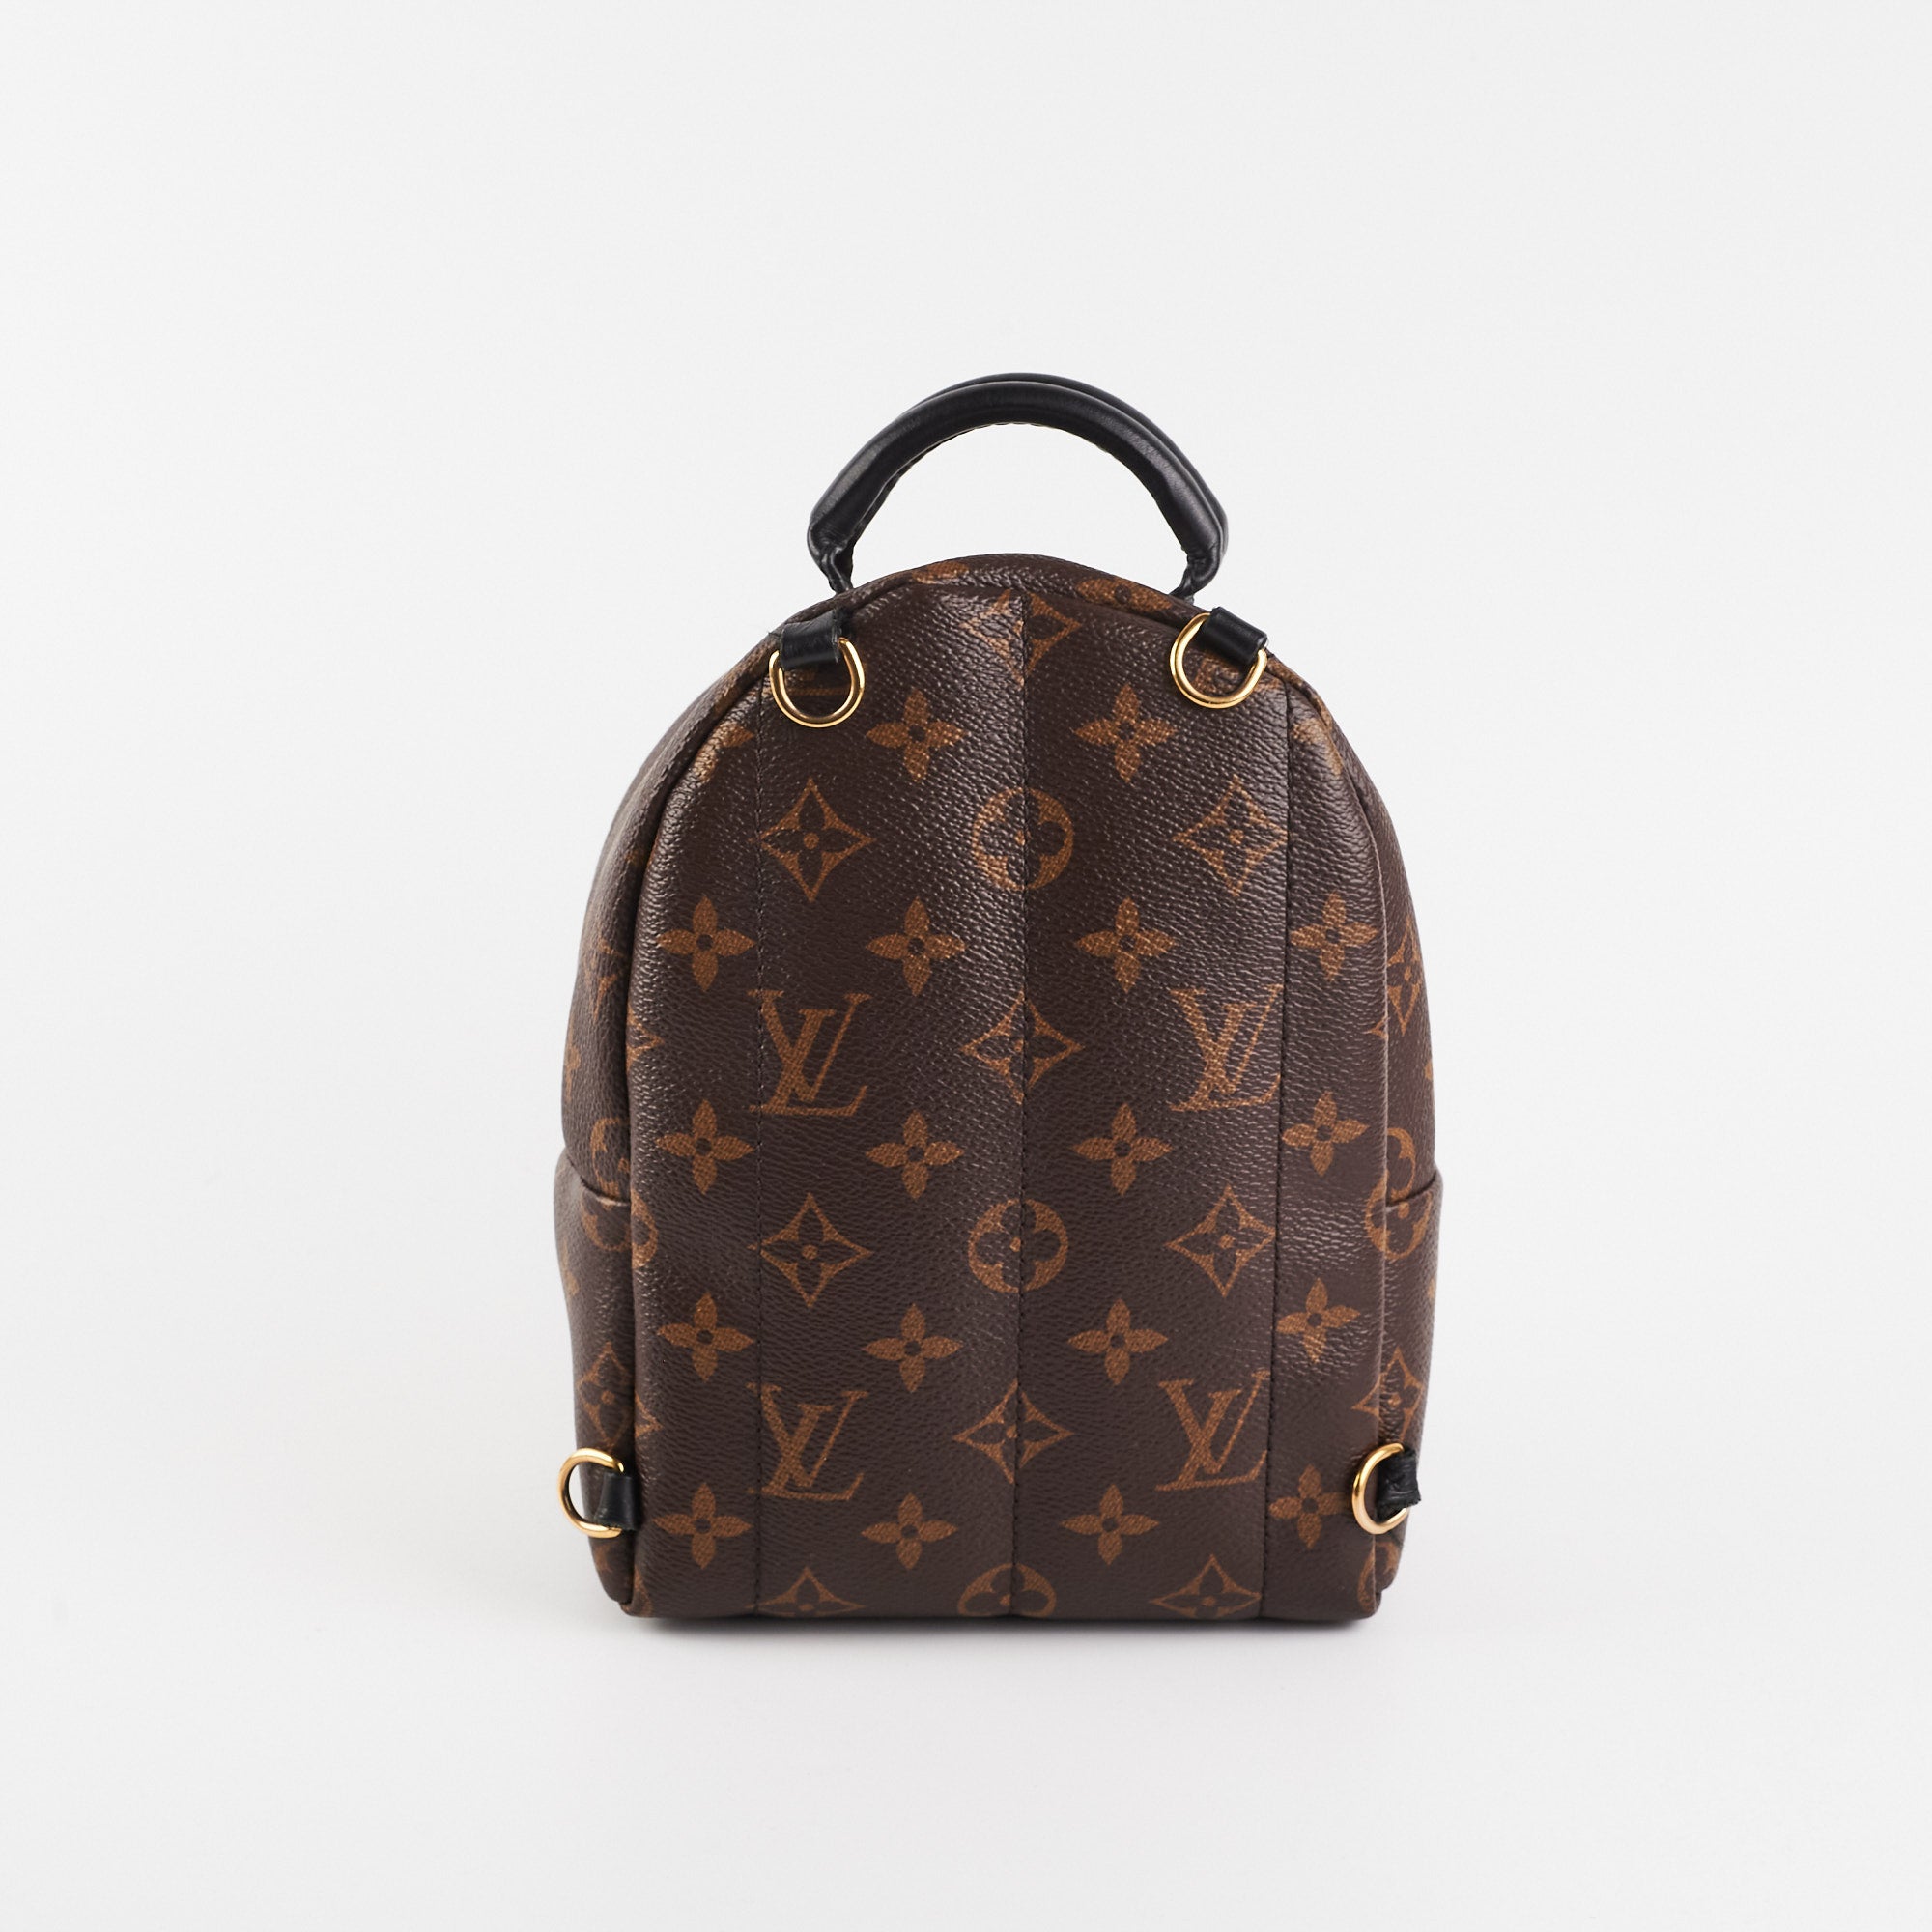 Louis Vuitton Mii Palm Spring Mini Monogram Bag - THE PURSE AFFAIR